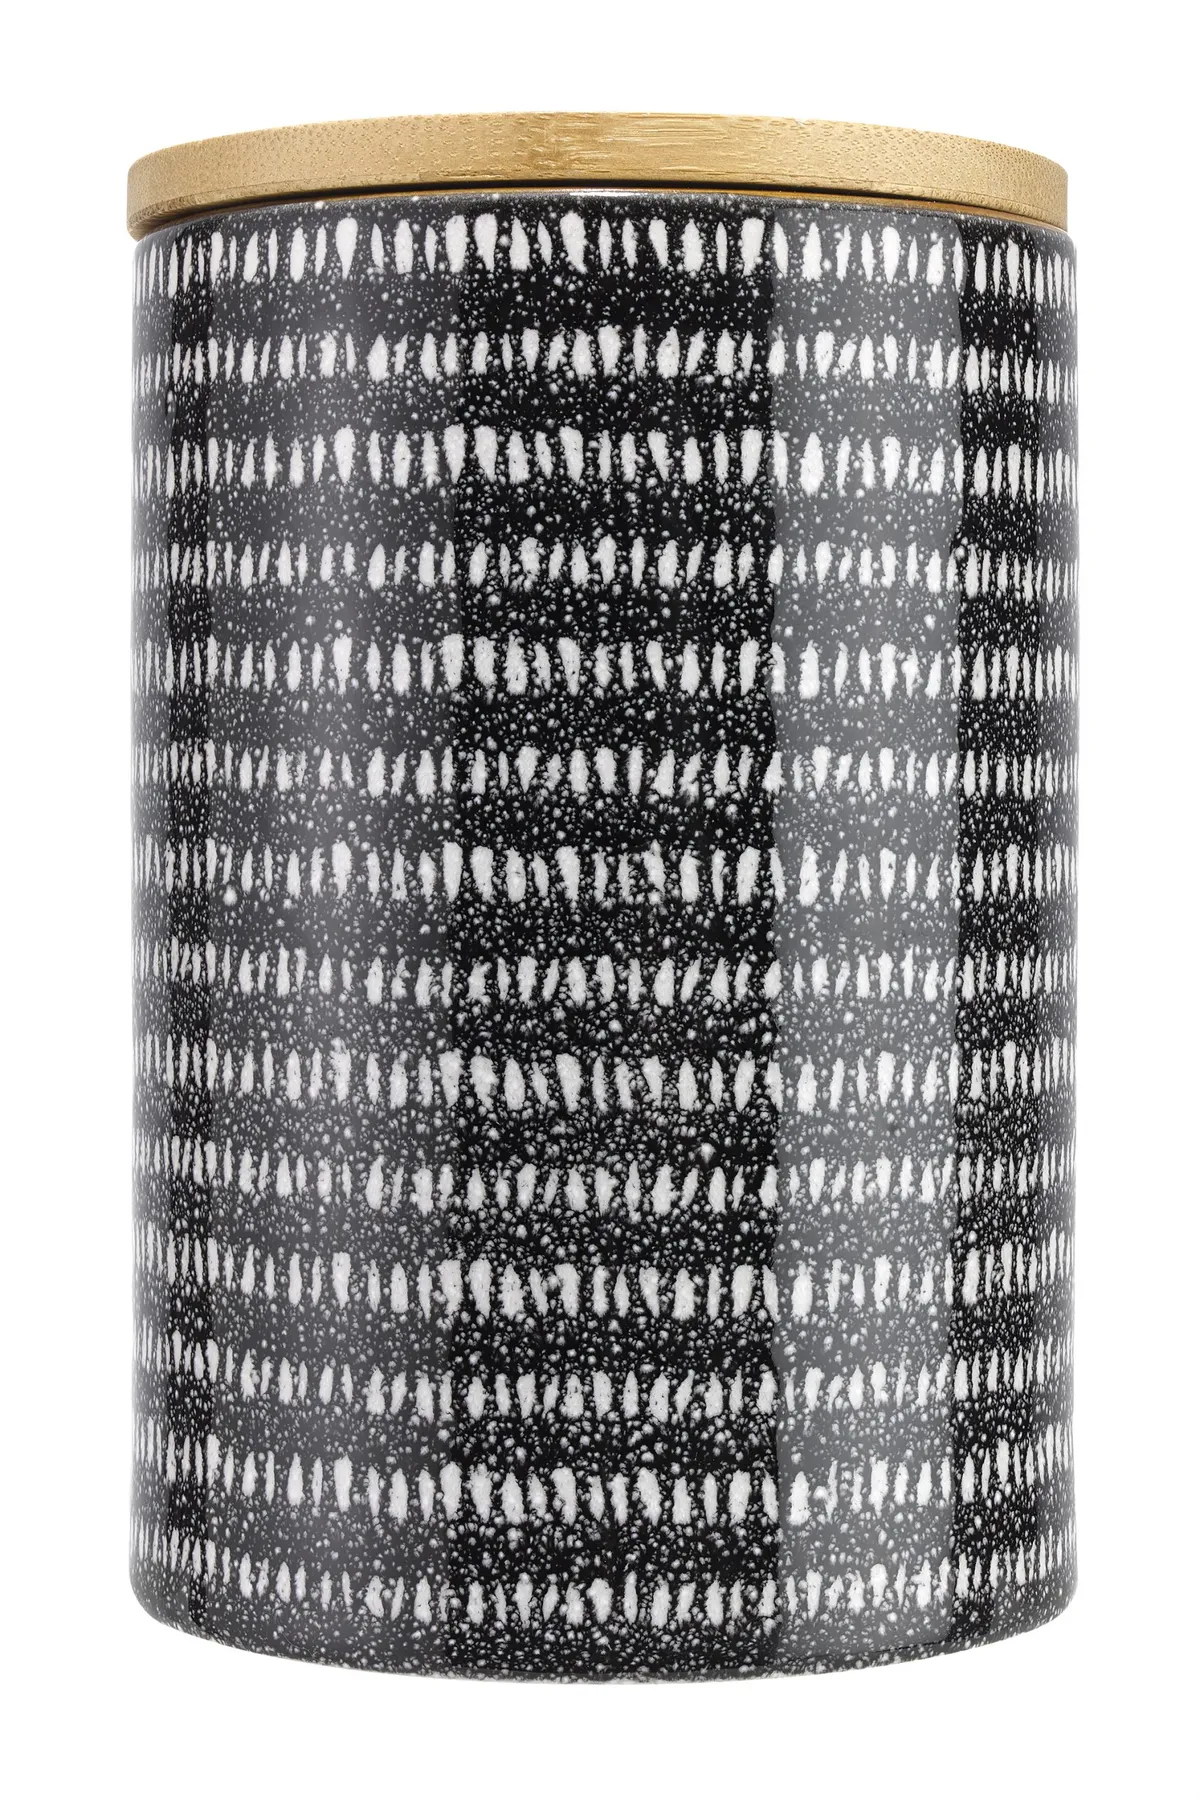 black and white kitchen storage jar